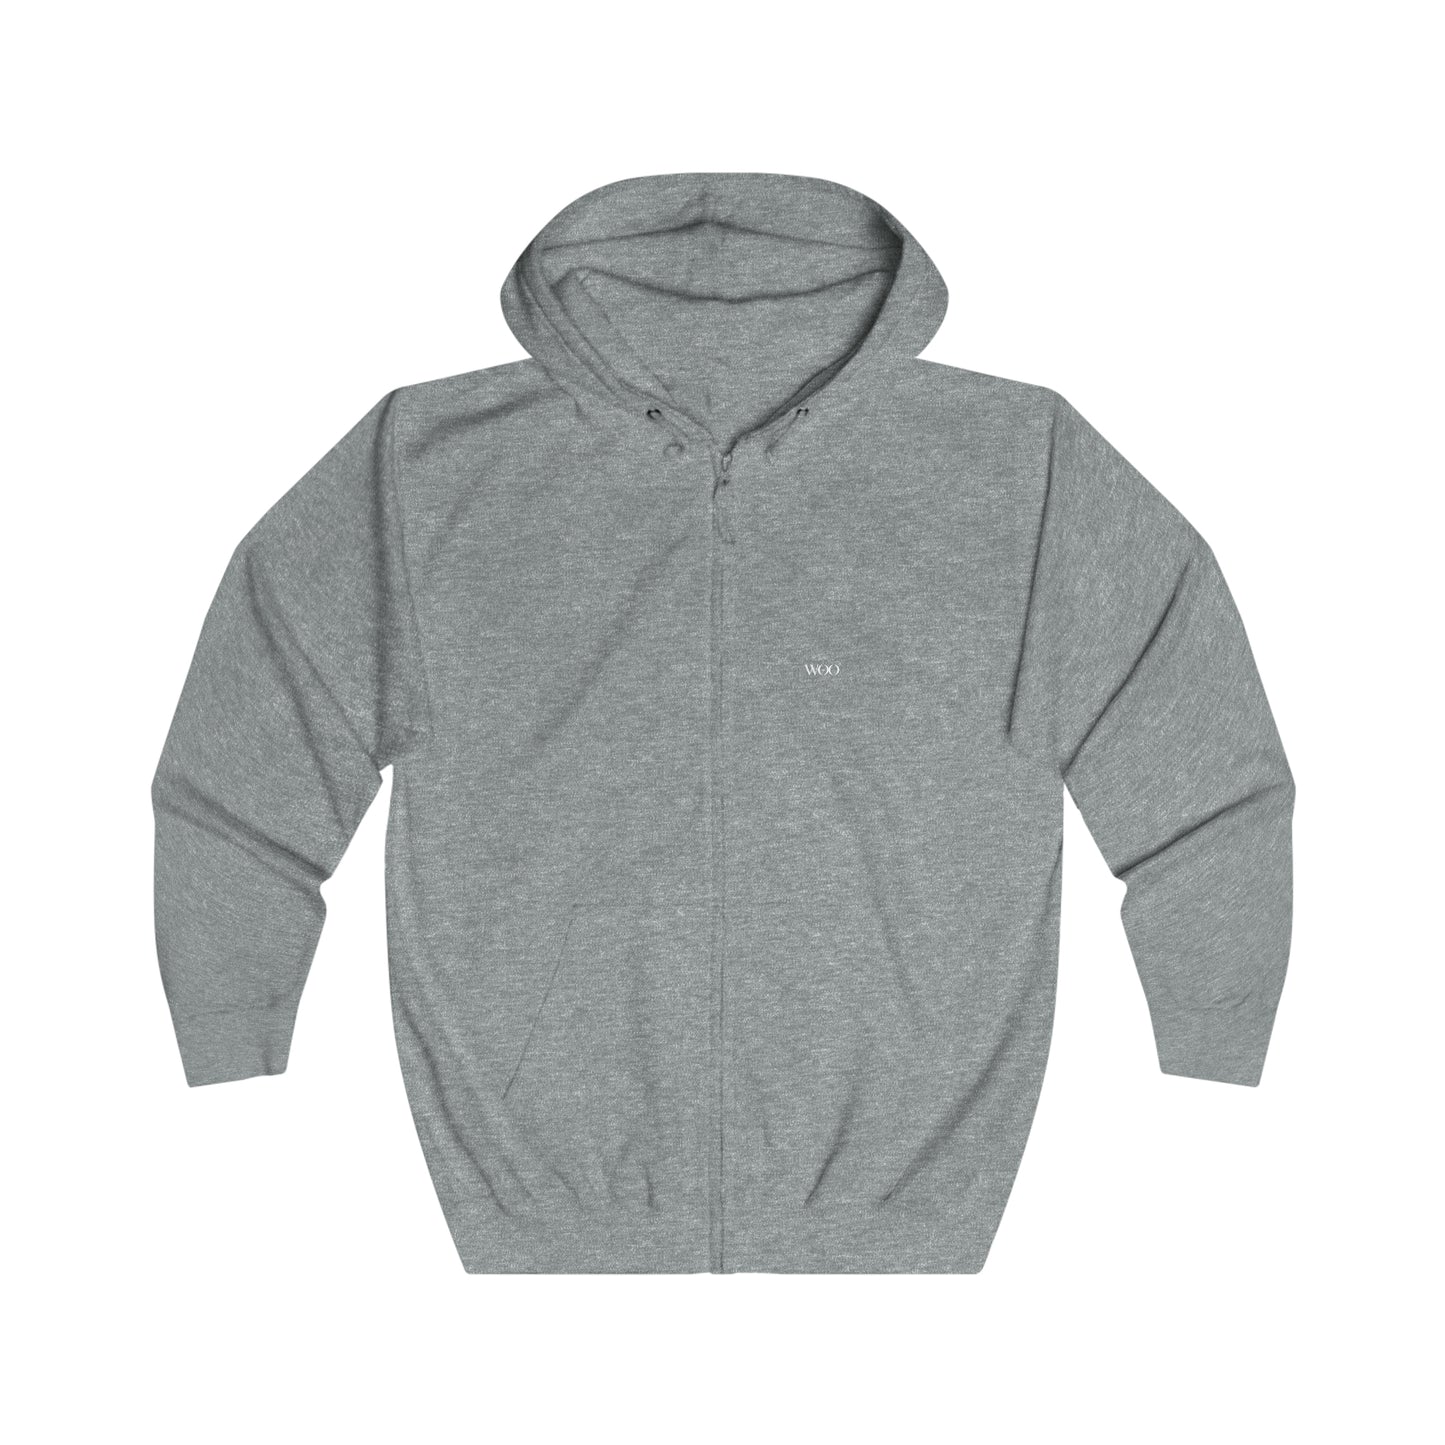 Just Bliss - full zip hoodie